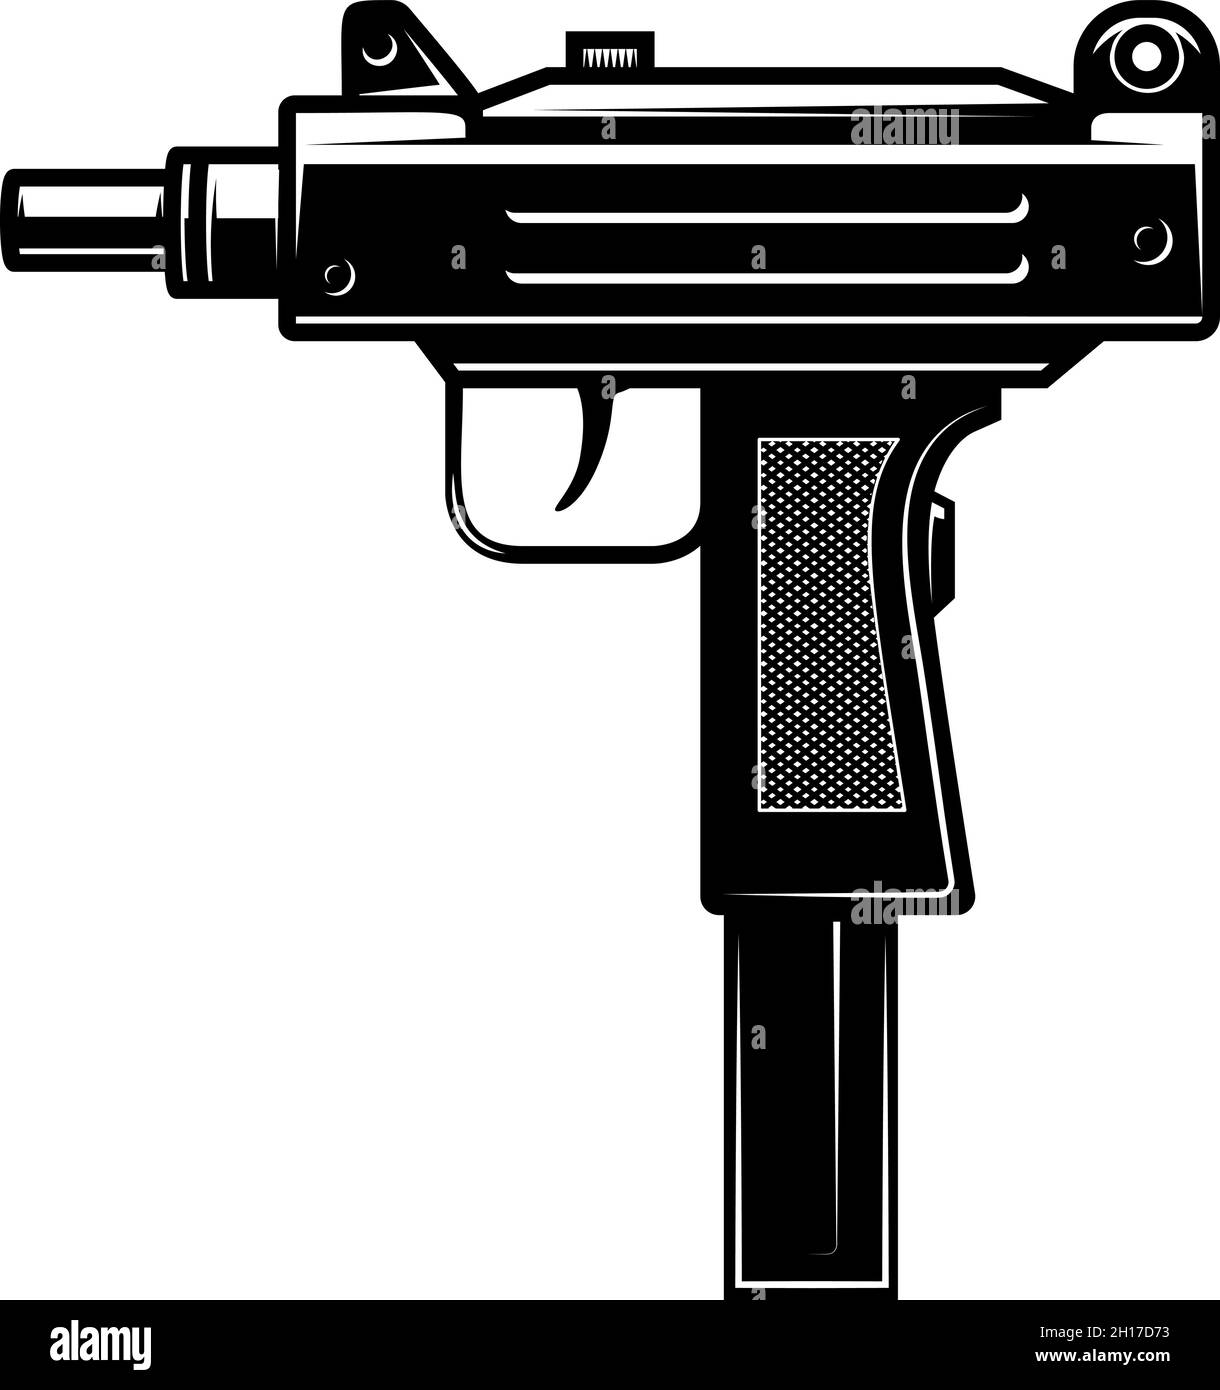 Illustrazione della pistola automatica uzi in stile monocromatico. Elemento di design per logo, etichetta, cartello, poster. Illustrazione vettoriale Illustrazione Vettoriale